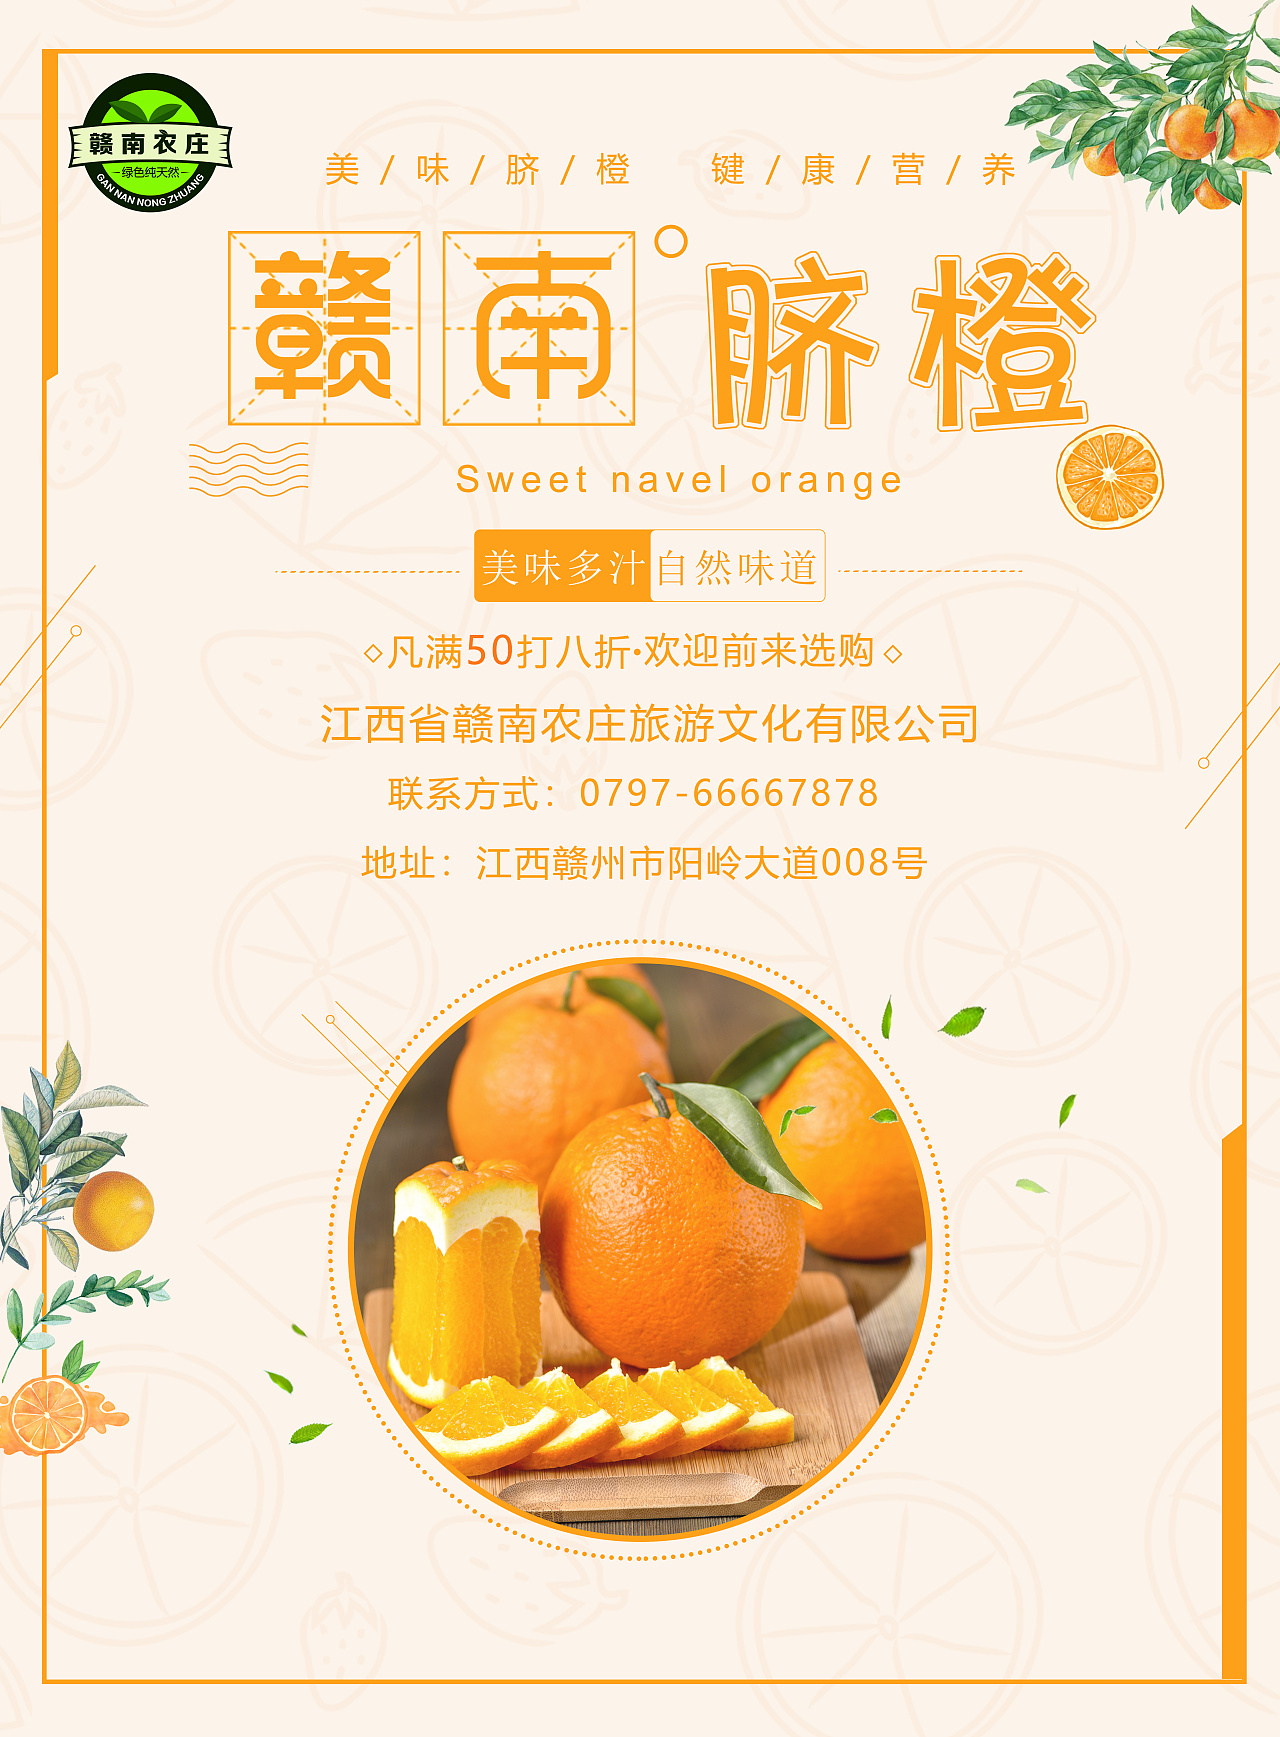 雷波脐橙广告语图片